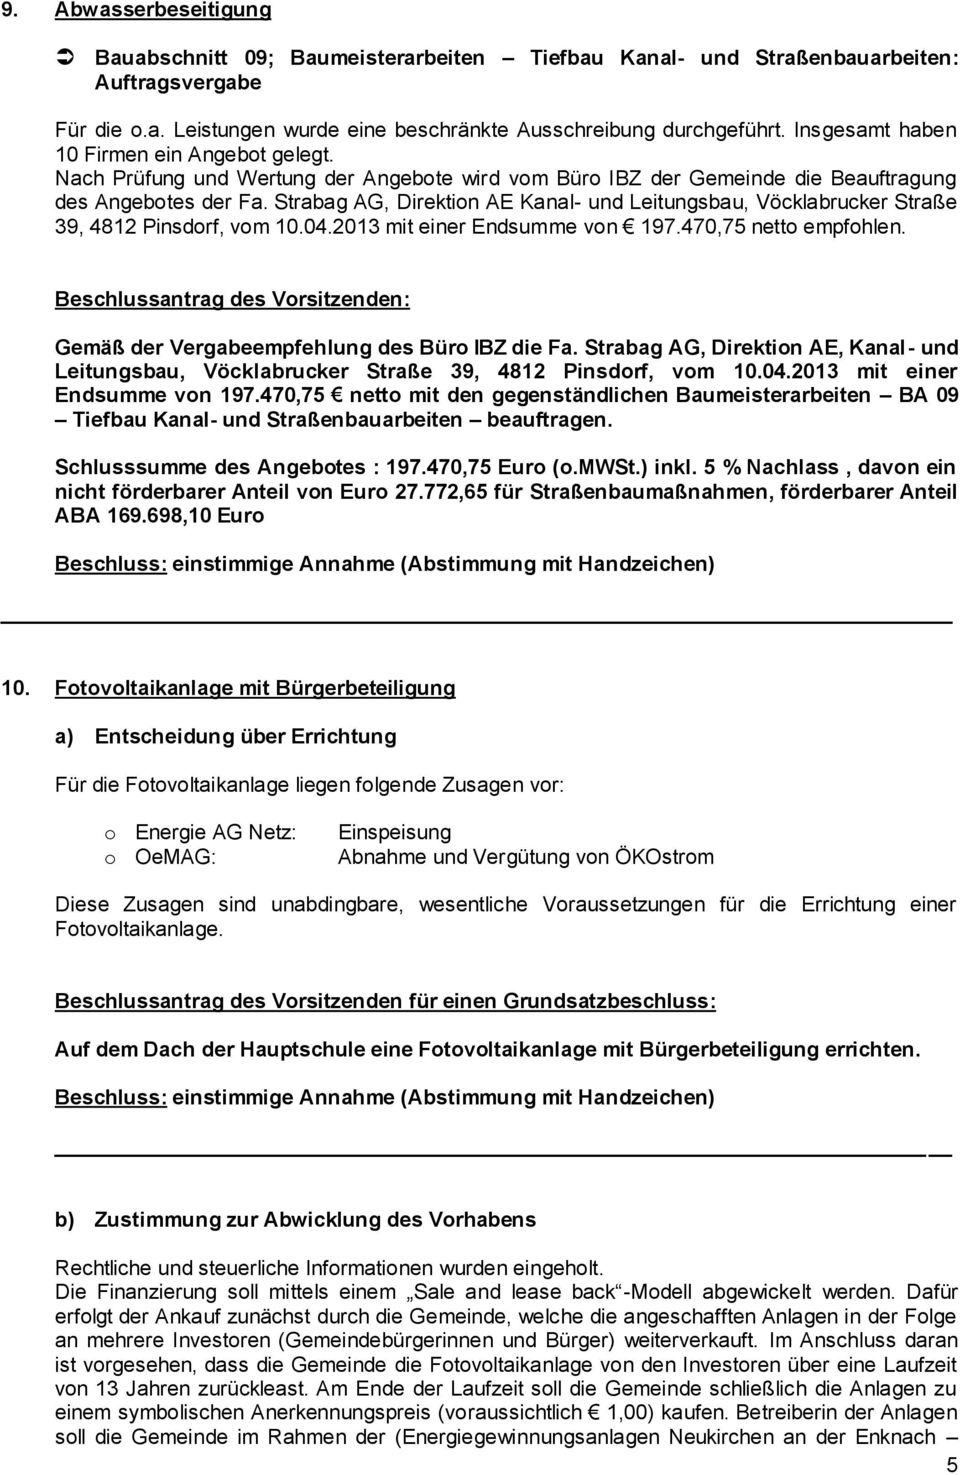 Strabag AG, Direktion AE Kanal- und Leitungsbau, Vöcklabrucker Straße 39, 4812 Pinsdorf, vom 10.04.2013 mit einer Endsumme von 197.470,75 netto empfohlen.